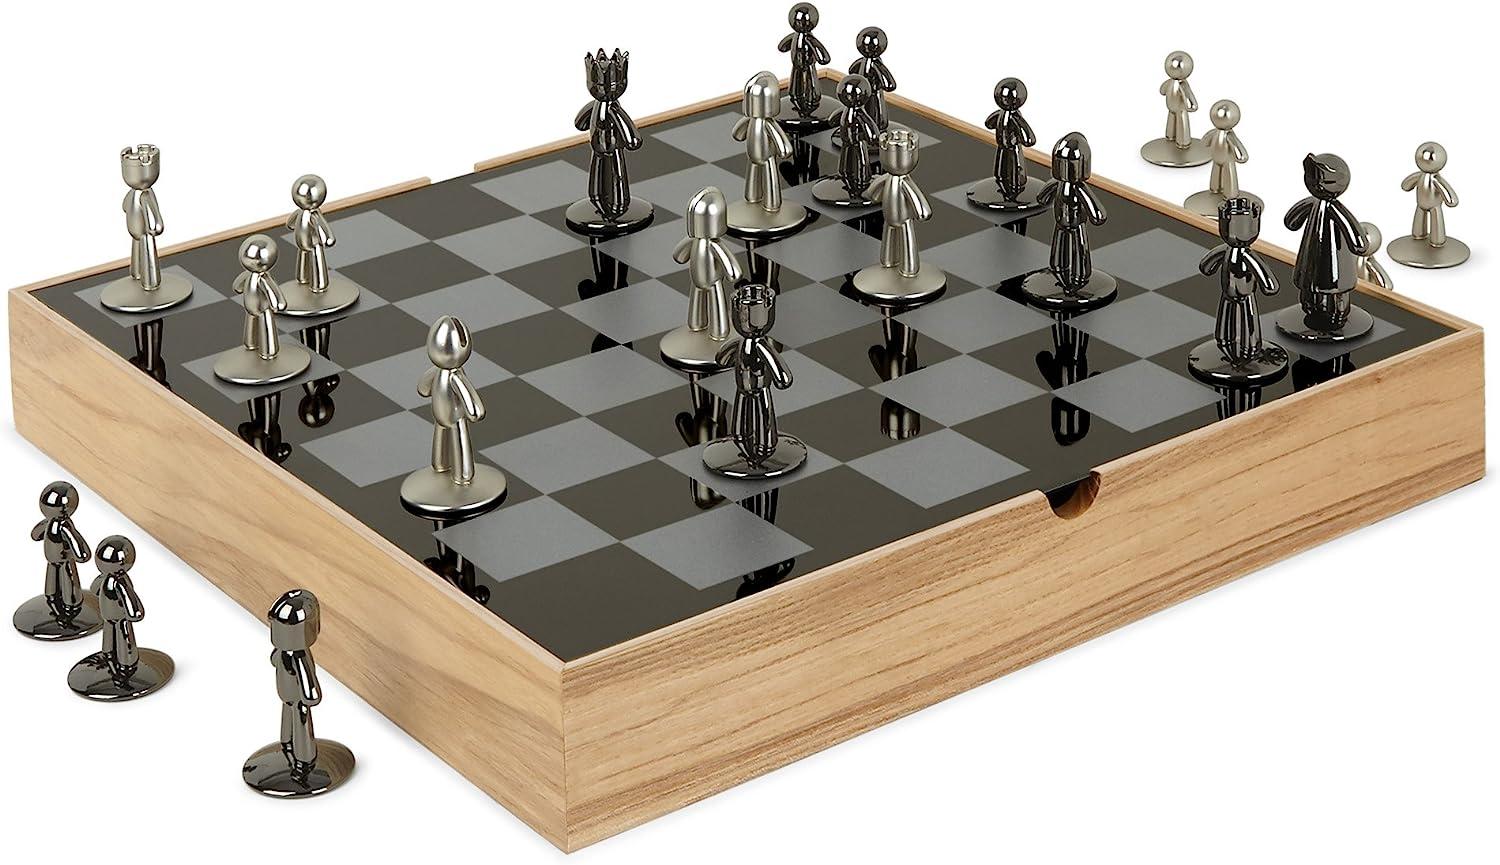 Umbra Buddy Schachbrett, Schachspiel, Spielzeug, Schach Spiel, Holz, Natur, 36 cm, 1005304-390 Bild 1